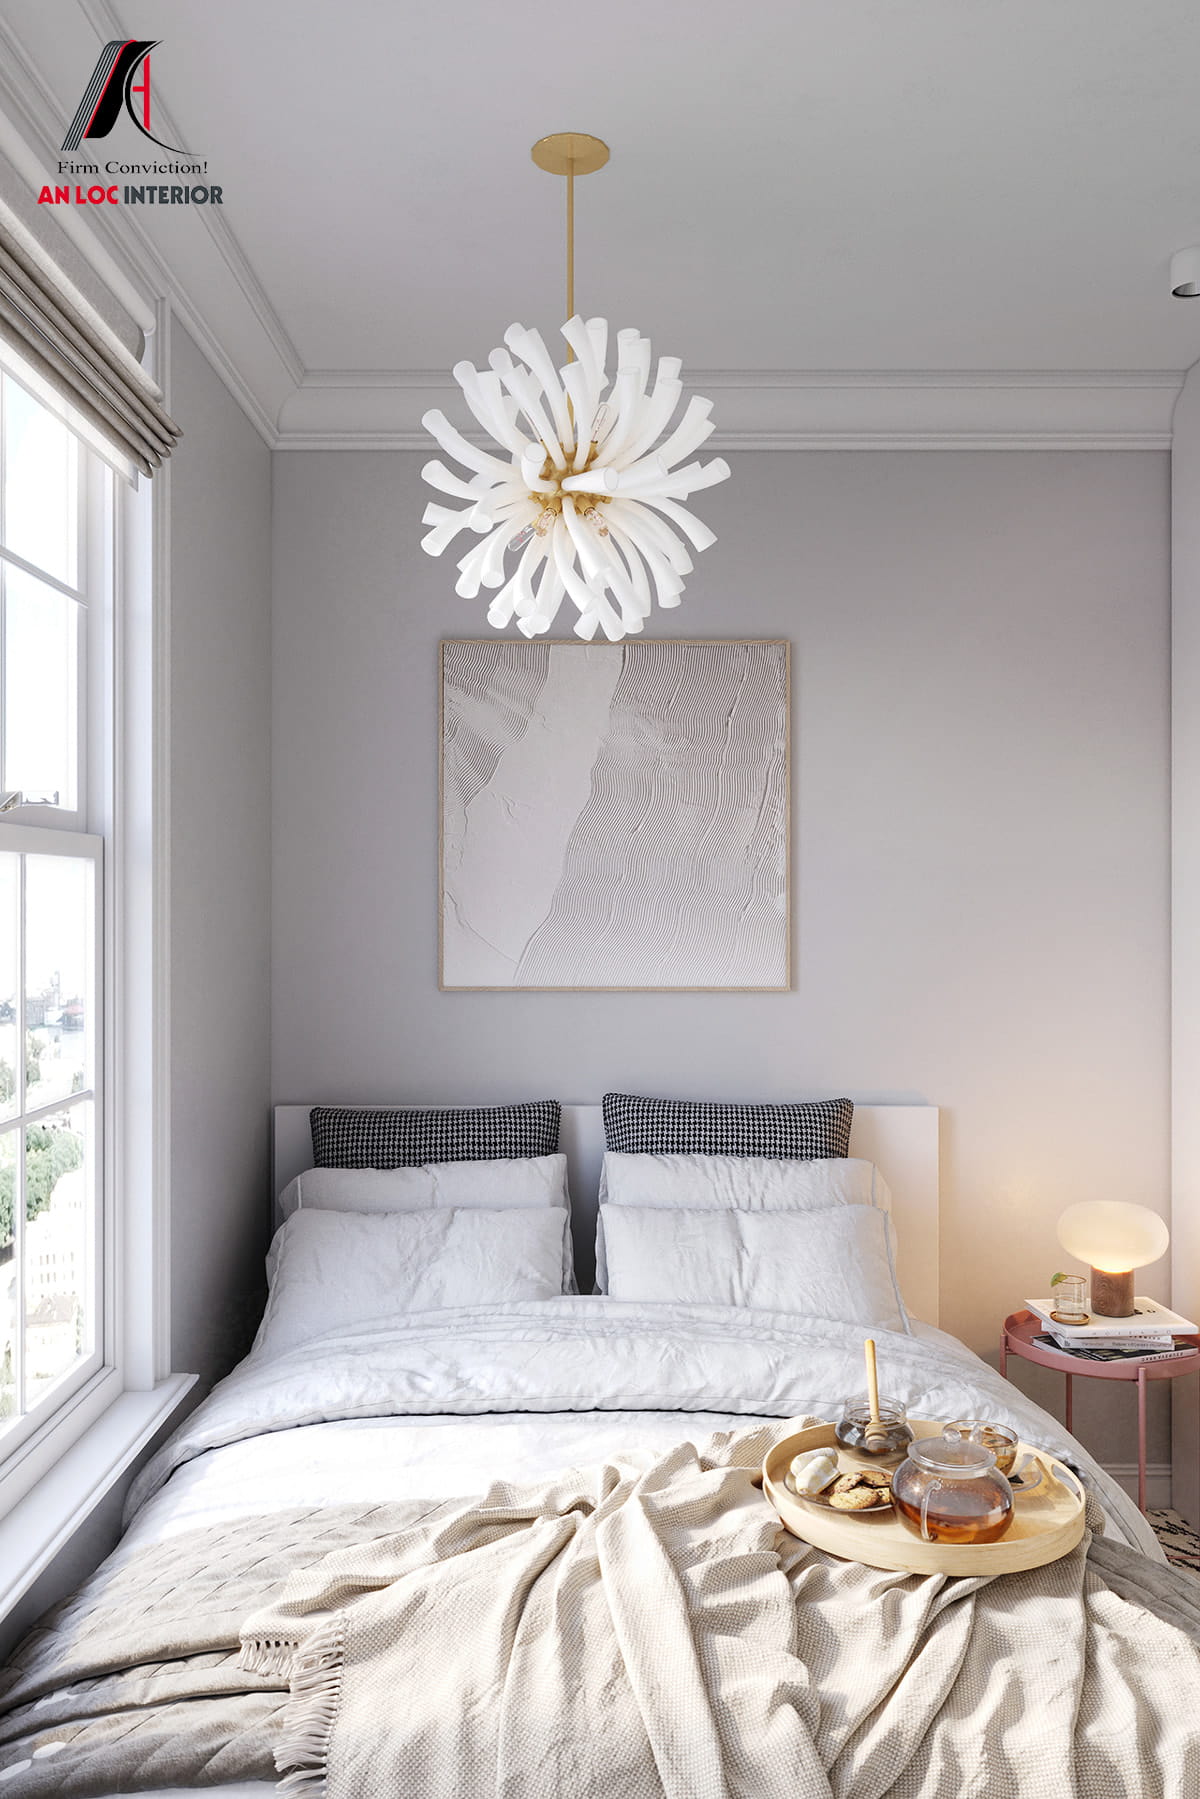 Căn phòng ngủ nhỏ màu trắng tạo cảm giác tinh khôi, xinh đẹp với cửa sổ chiếu sáng tự nhiên 